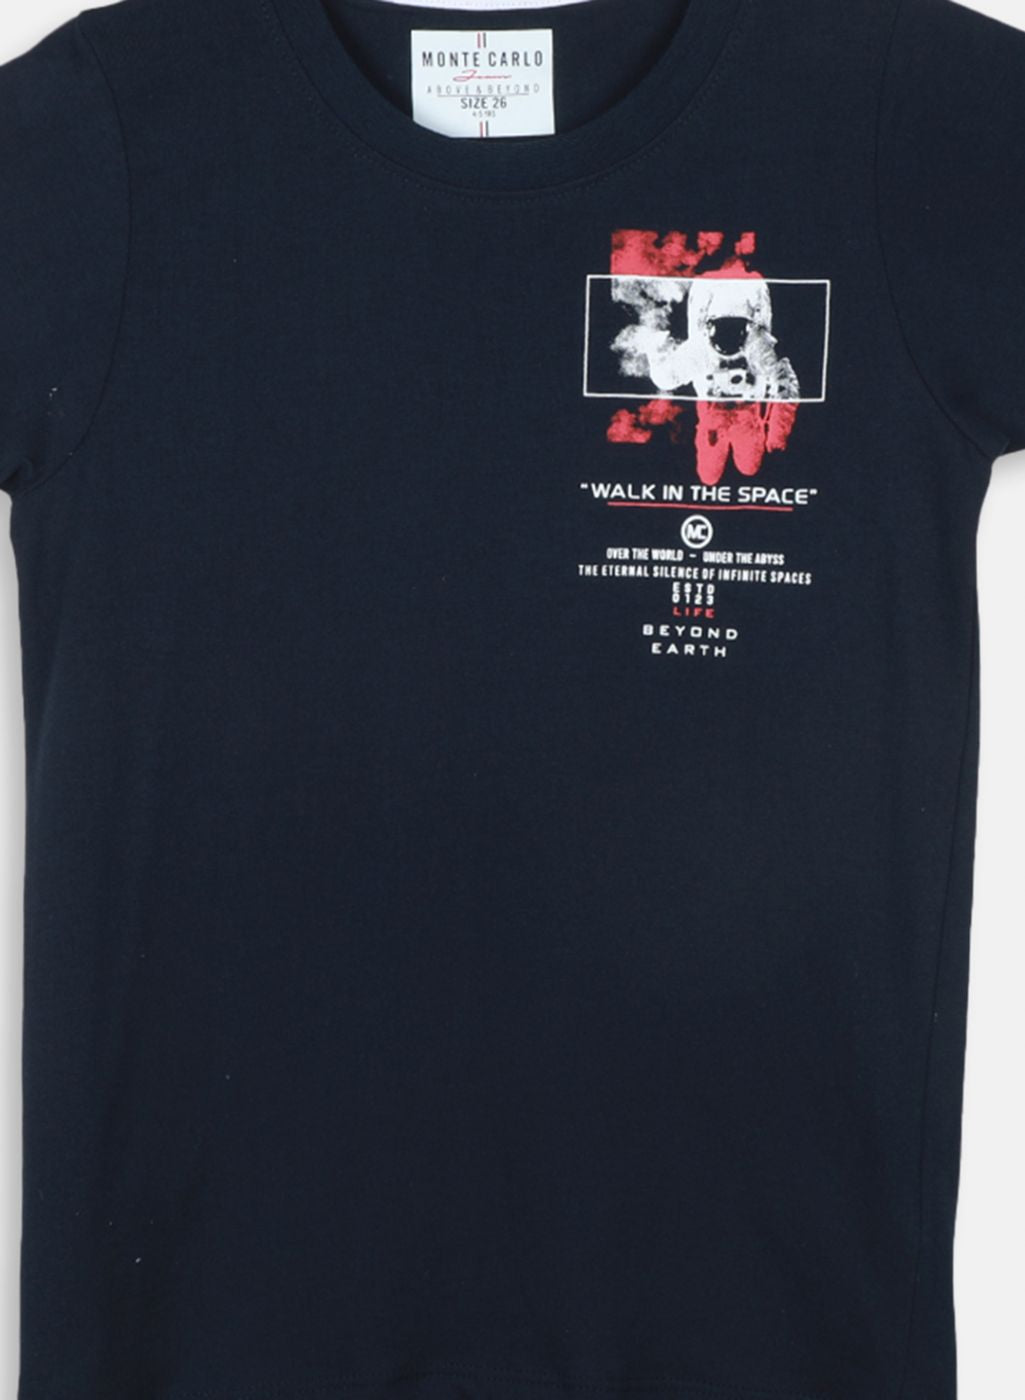 Boys NAvy Blue Printed T-Shirt